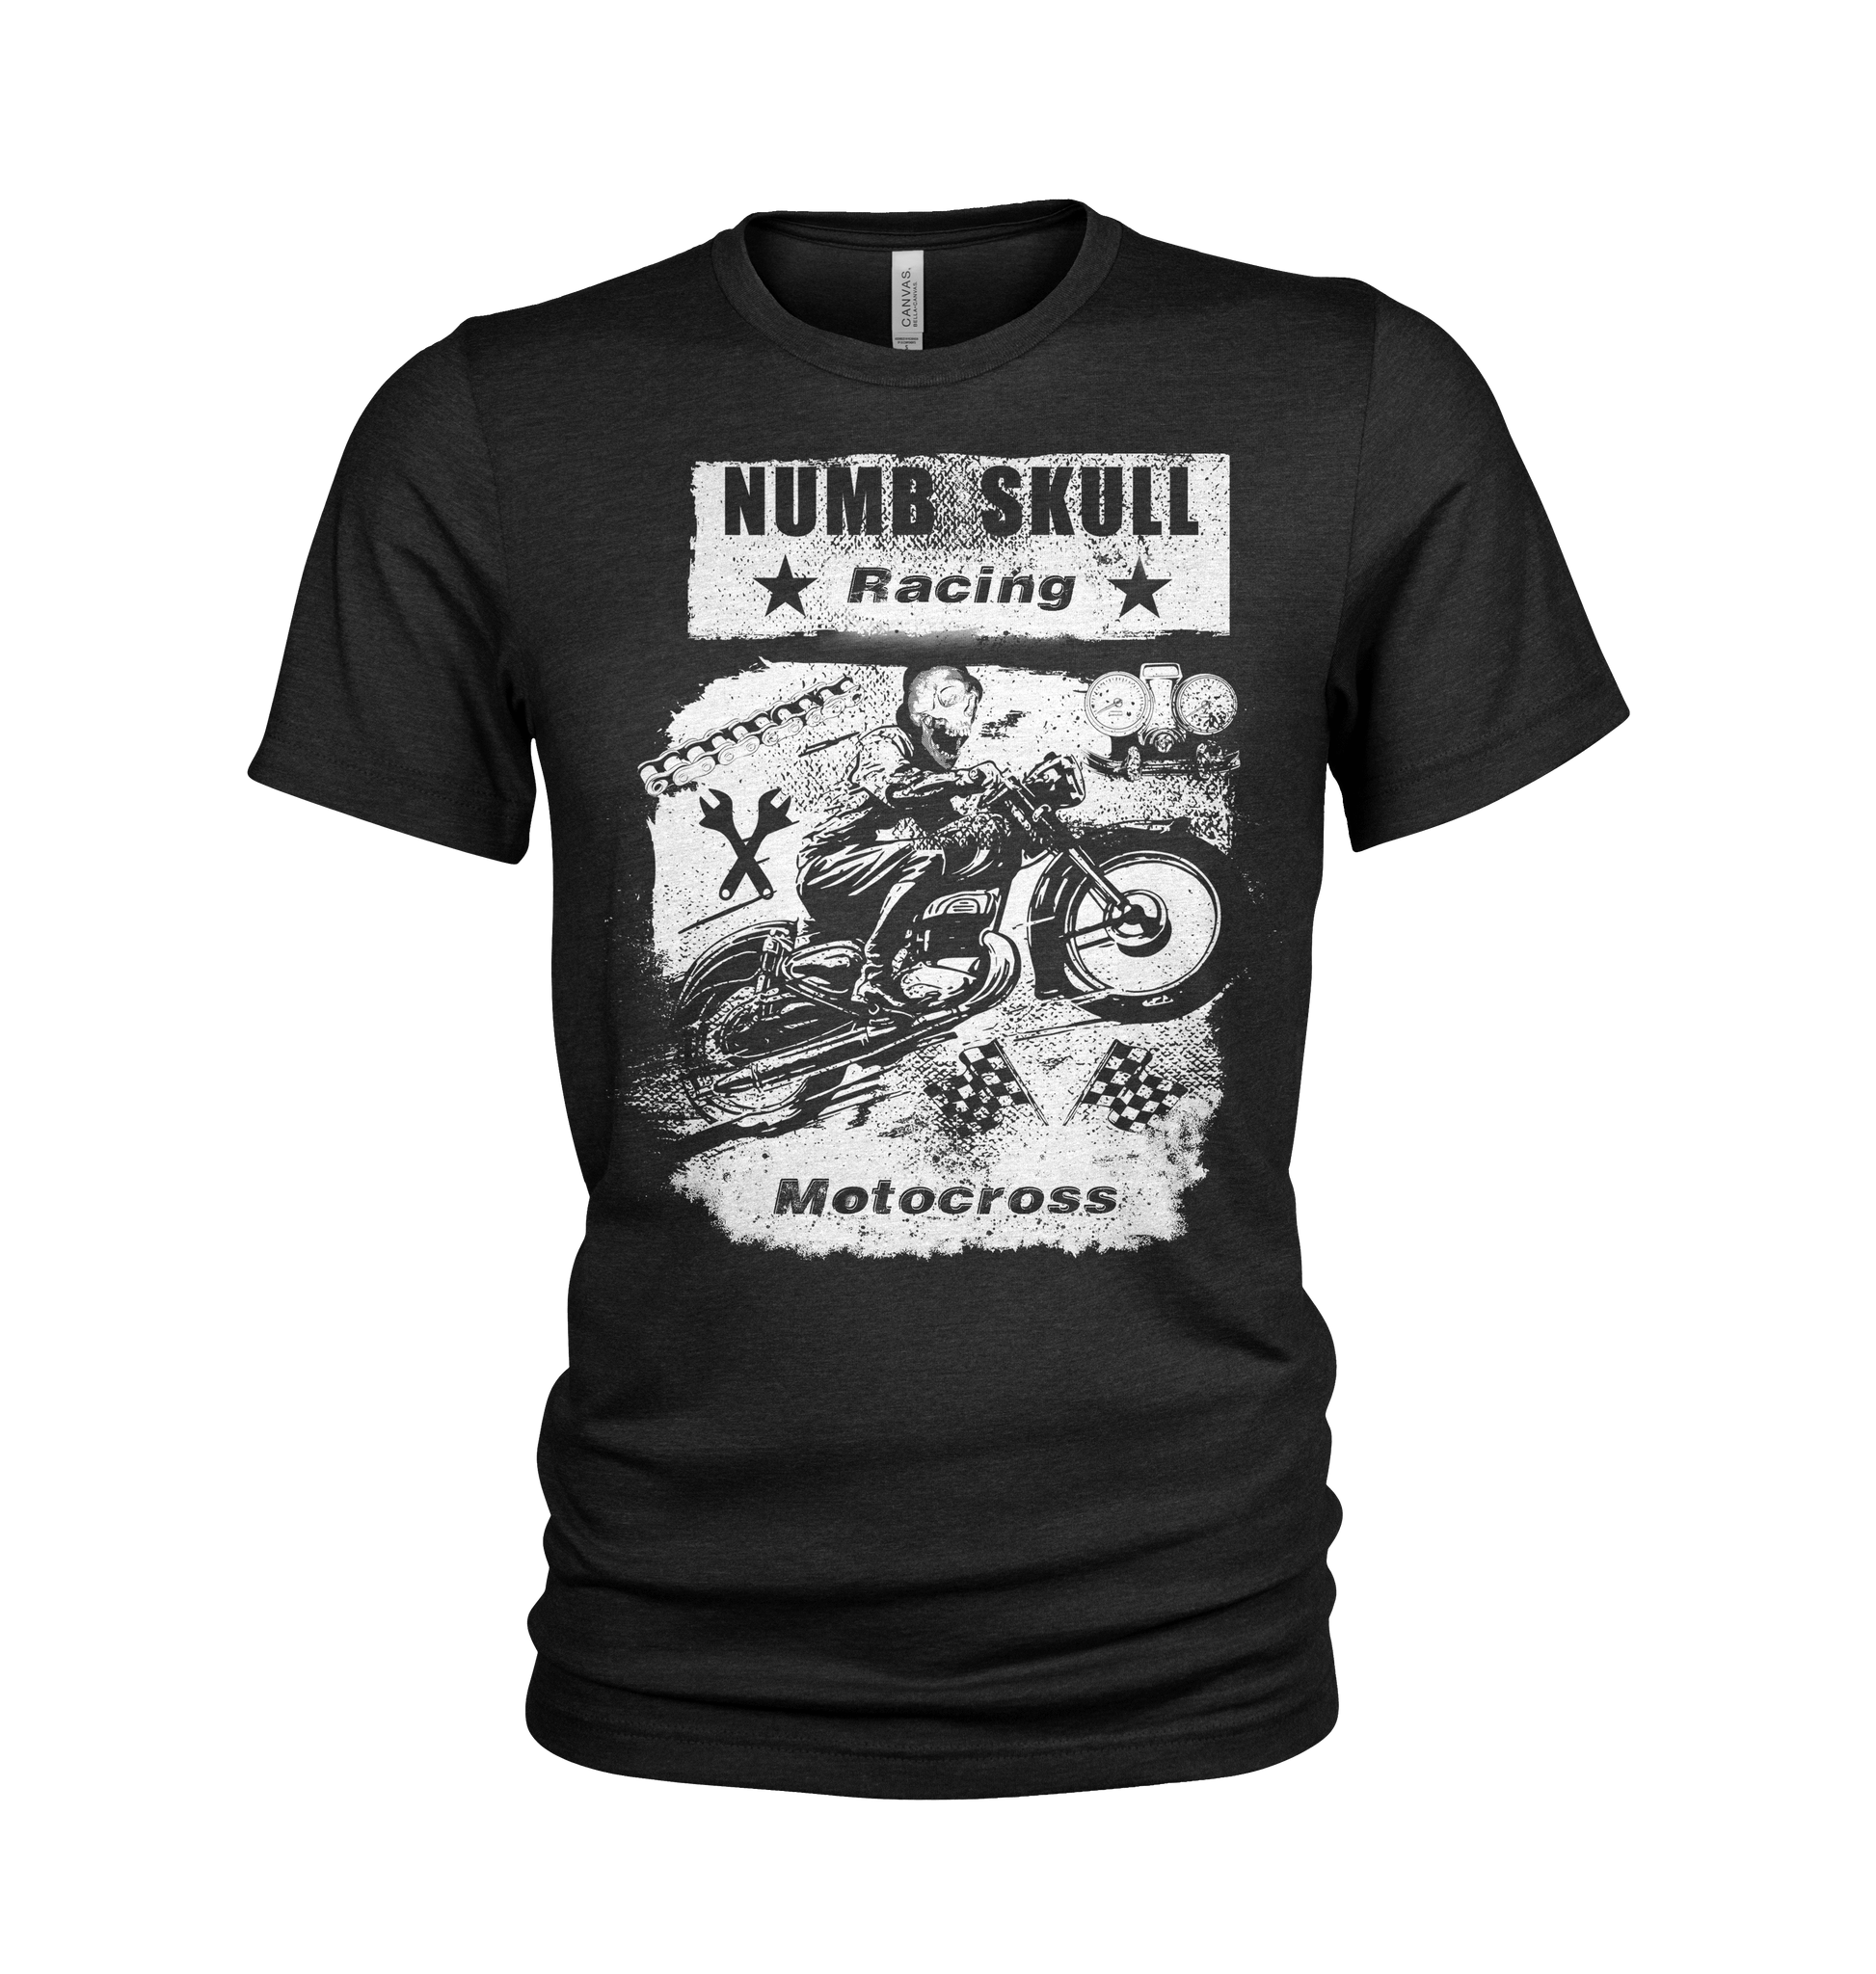 motocross t-shirt from numb skull designs